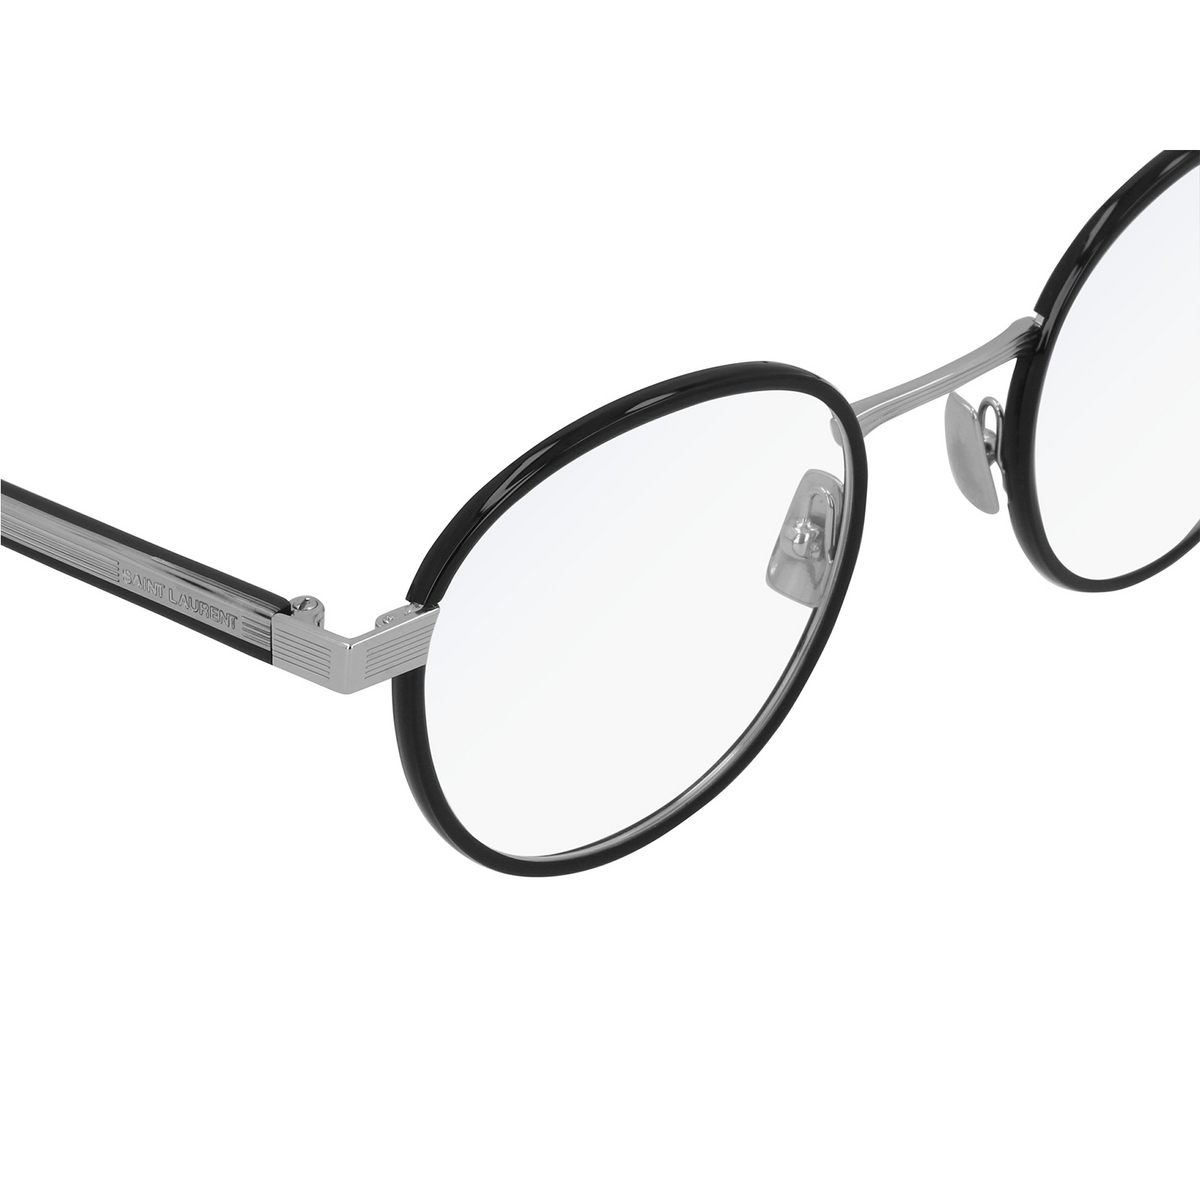 Saint Laurent® Round Eyeglasses: SL 125 color Black 001 - 3/3.